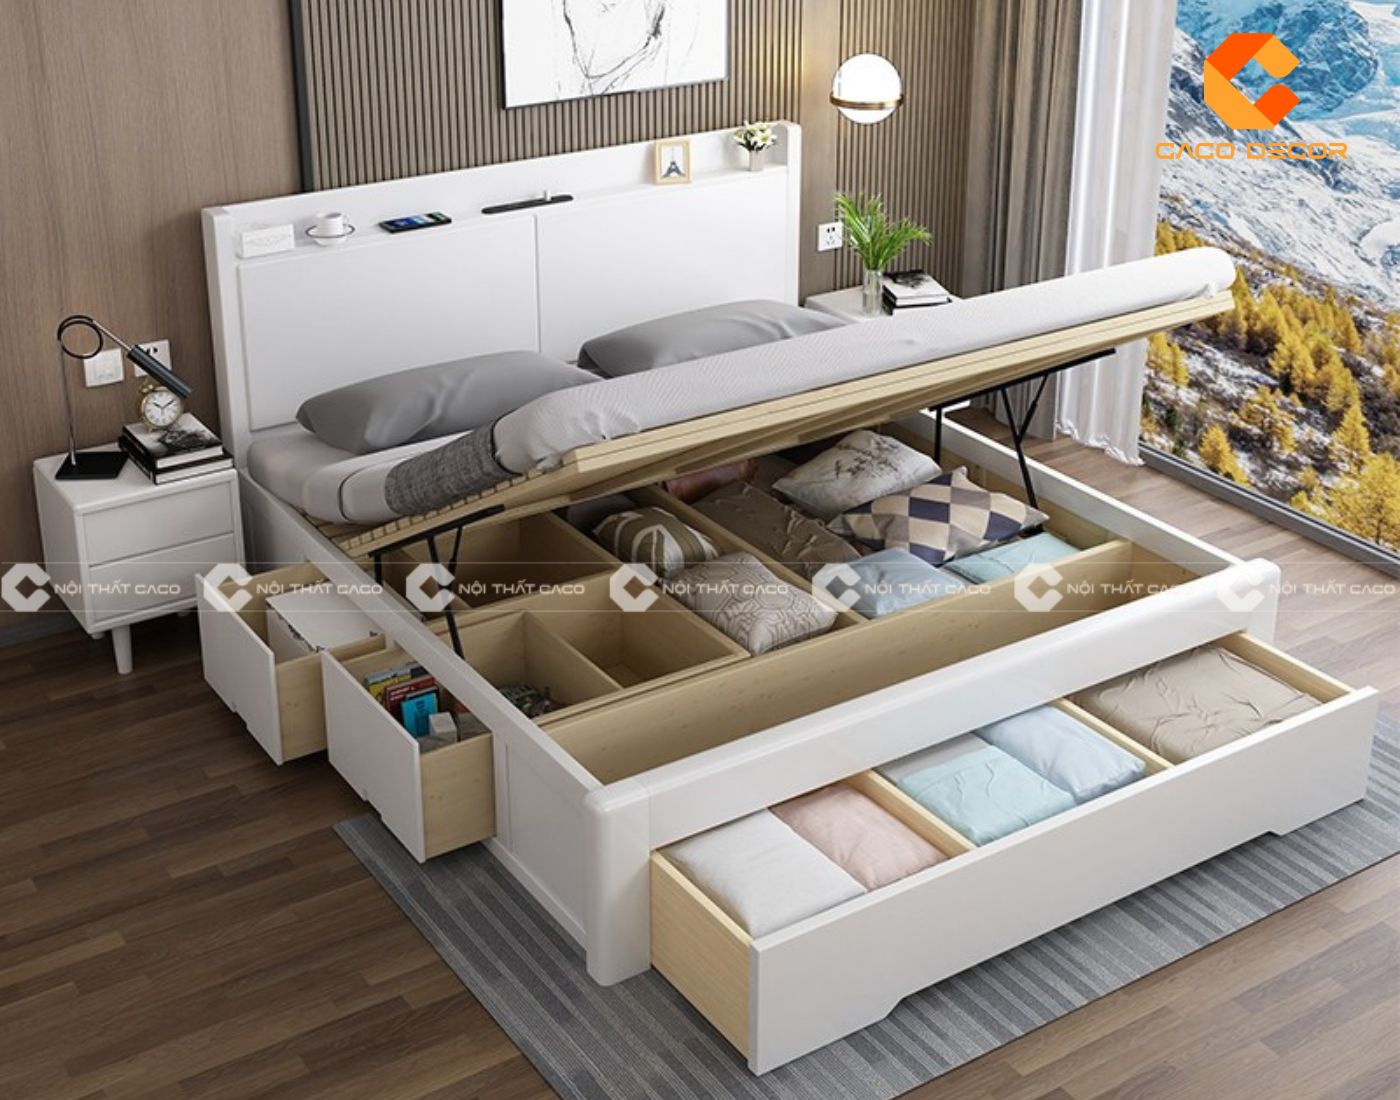 Giường gỗ thông minh đa năng giúp tiết kiệm tối đa không gian 5